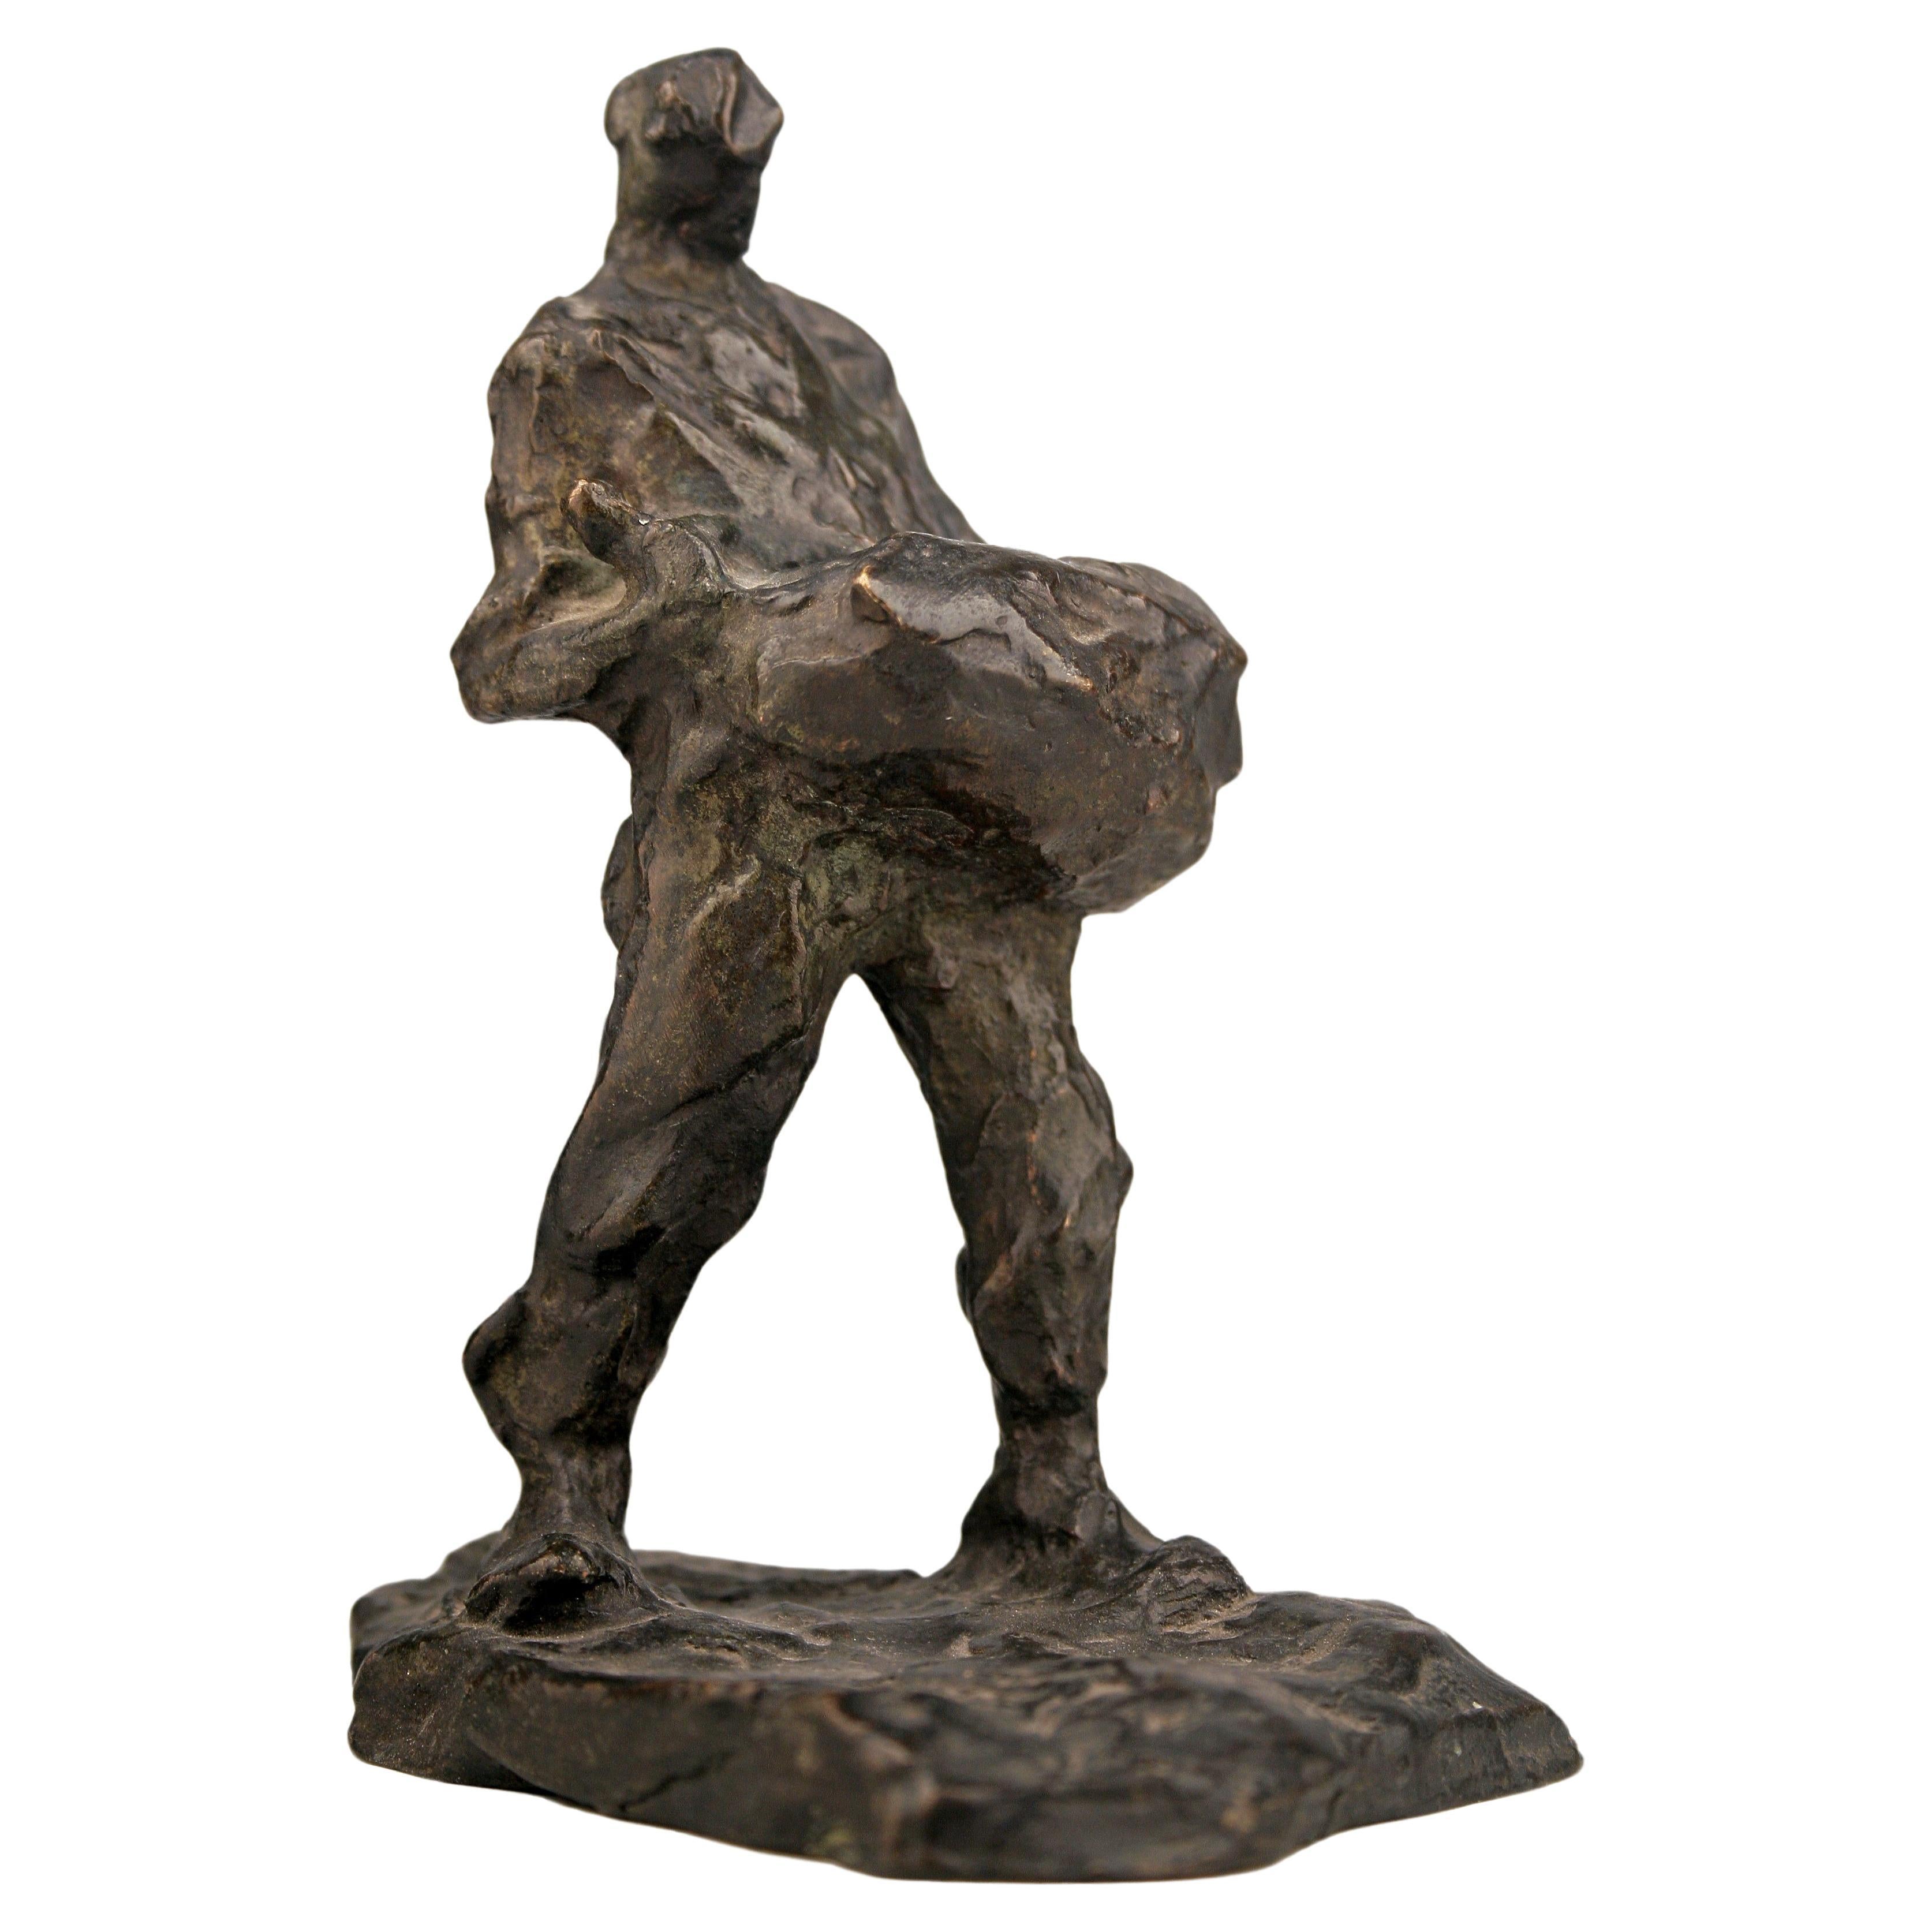 Sculpture en bronze du début du 20e siècle représentant un homme portant un sac à dos, réalisée par le sculpteur belge Demanet